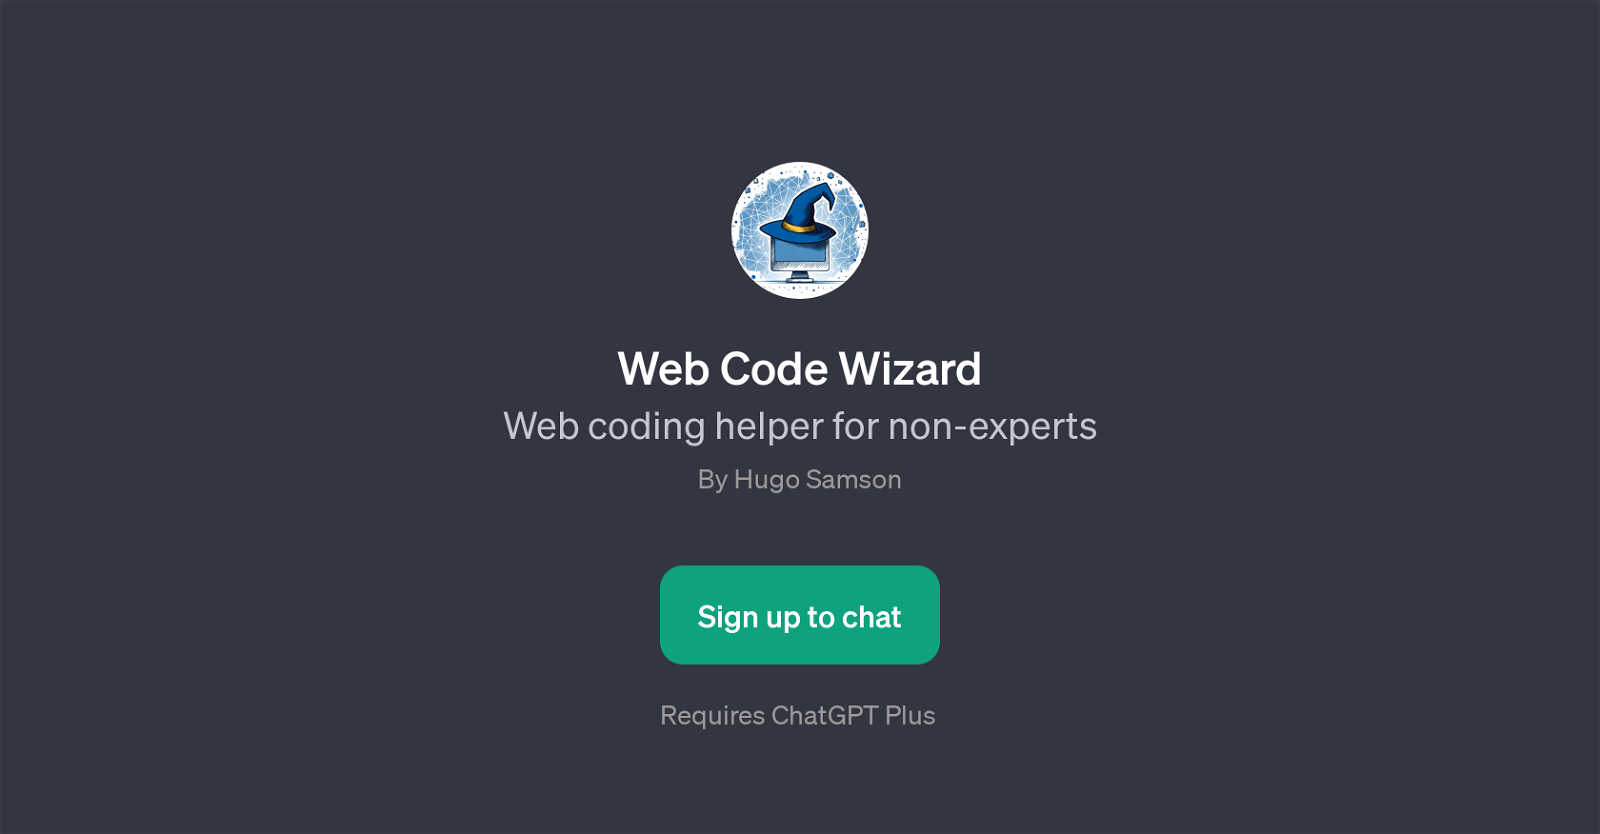 Web Code Wizard website